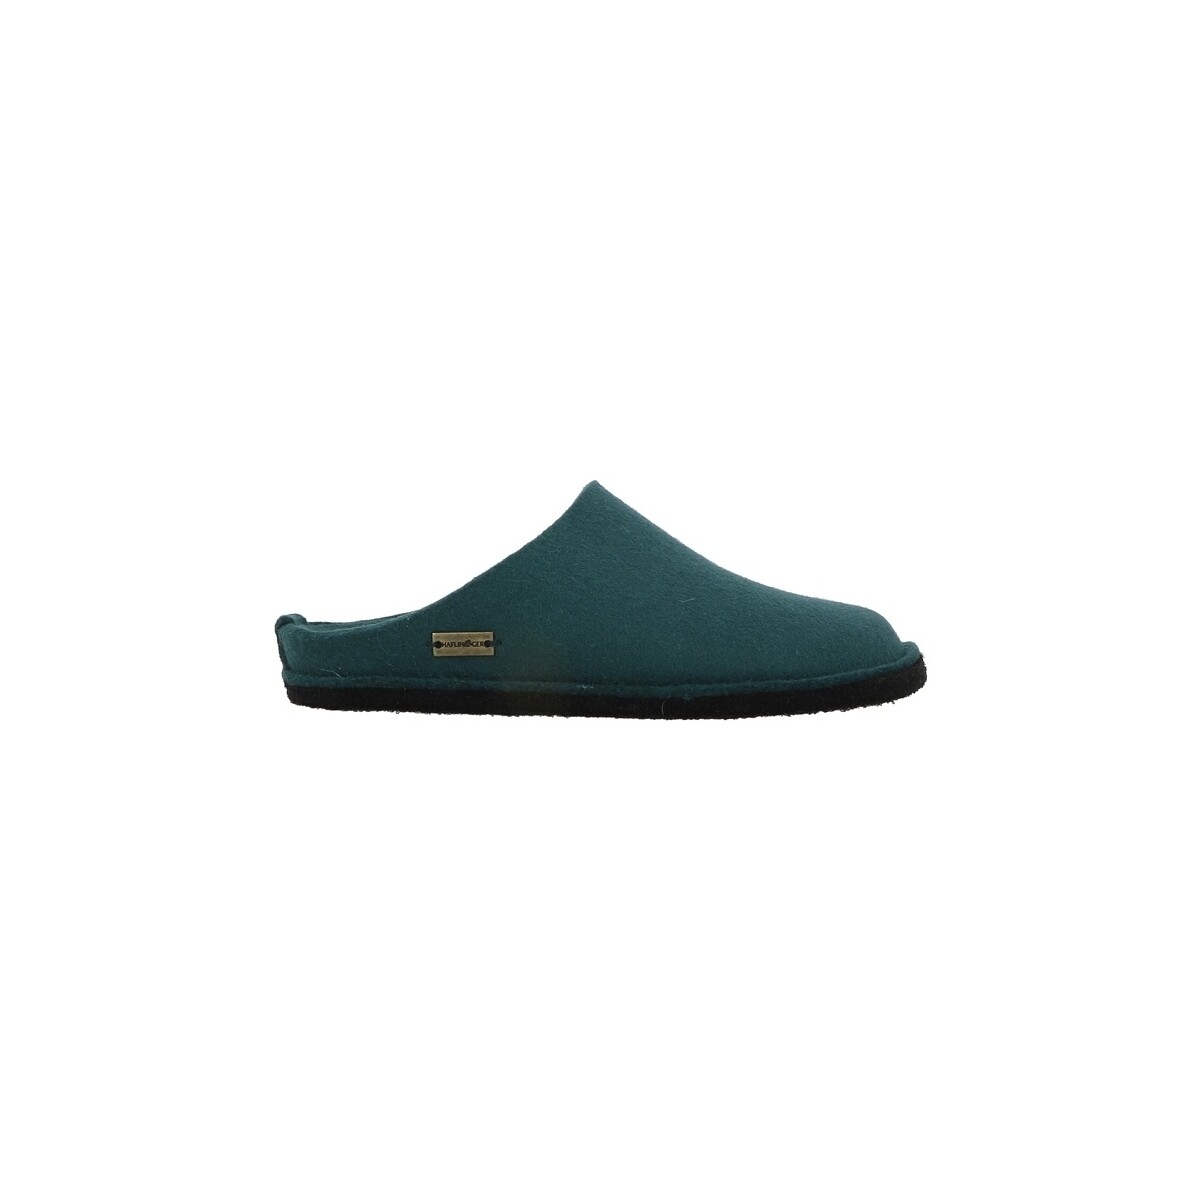 Cipők Női Mamuszok Haflinger FLAIR SOFT Zöld